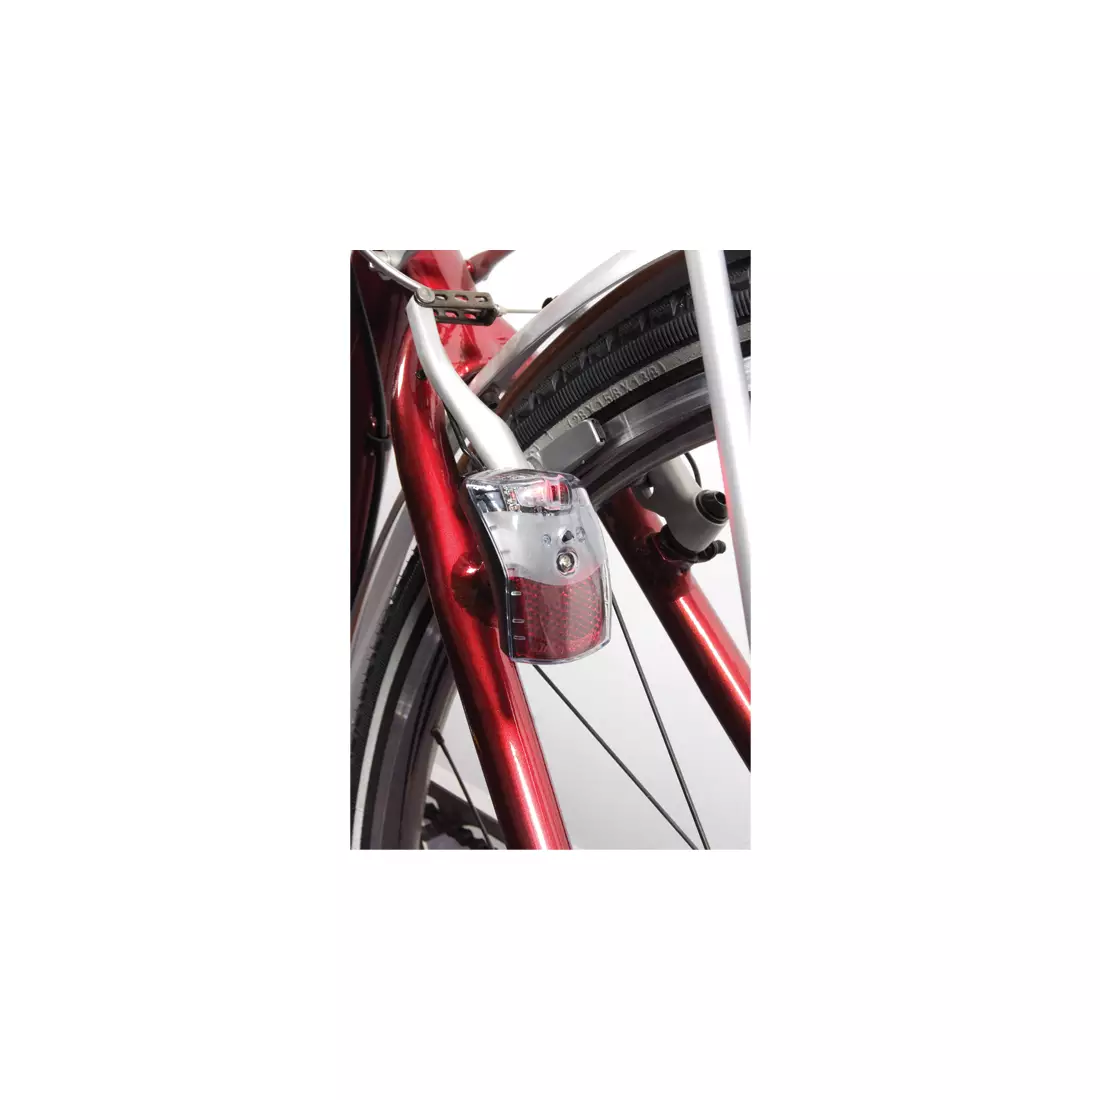 SPANNINGA hátsó kerékpár lámpa PIXEO XB SNG-135538